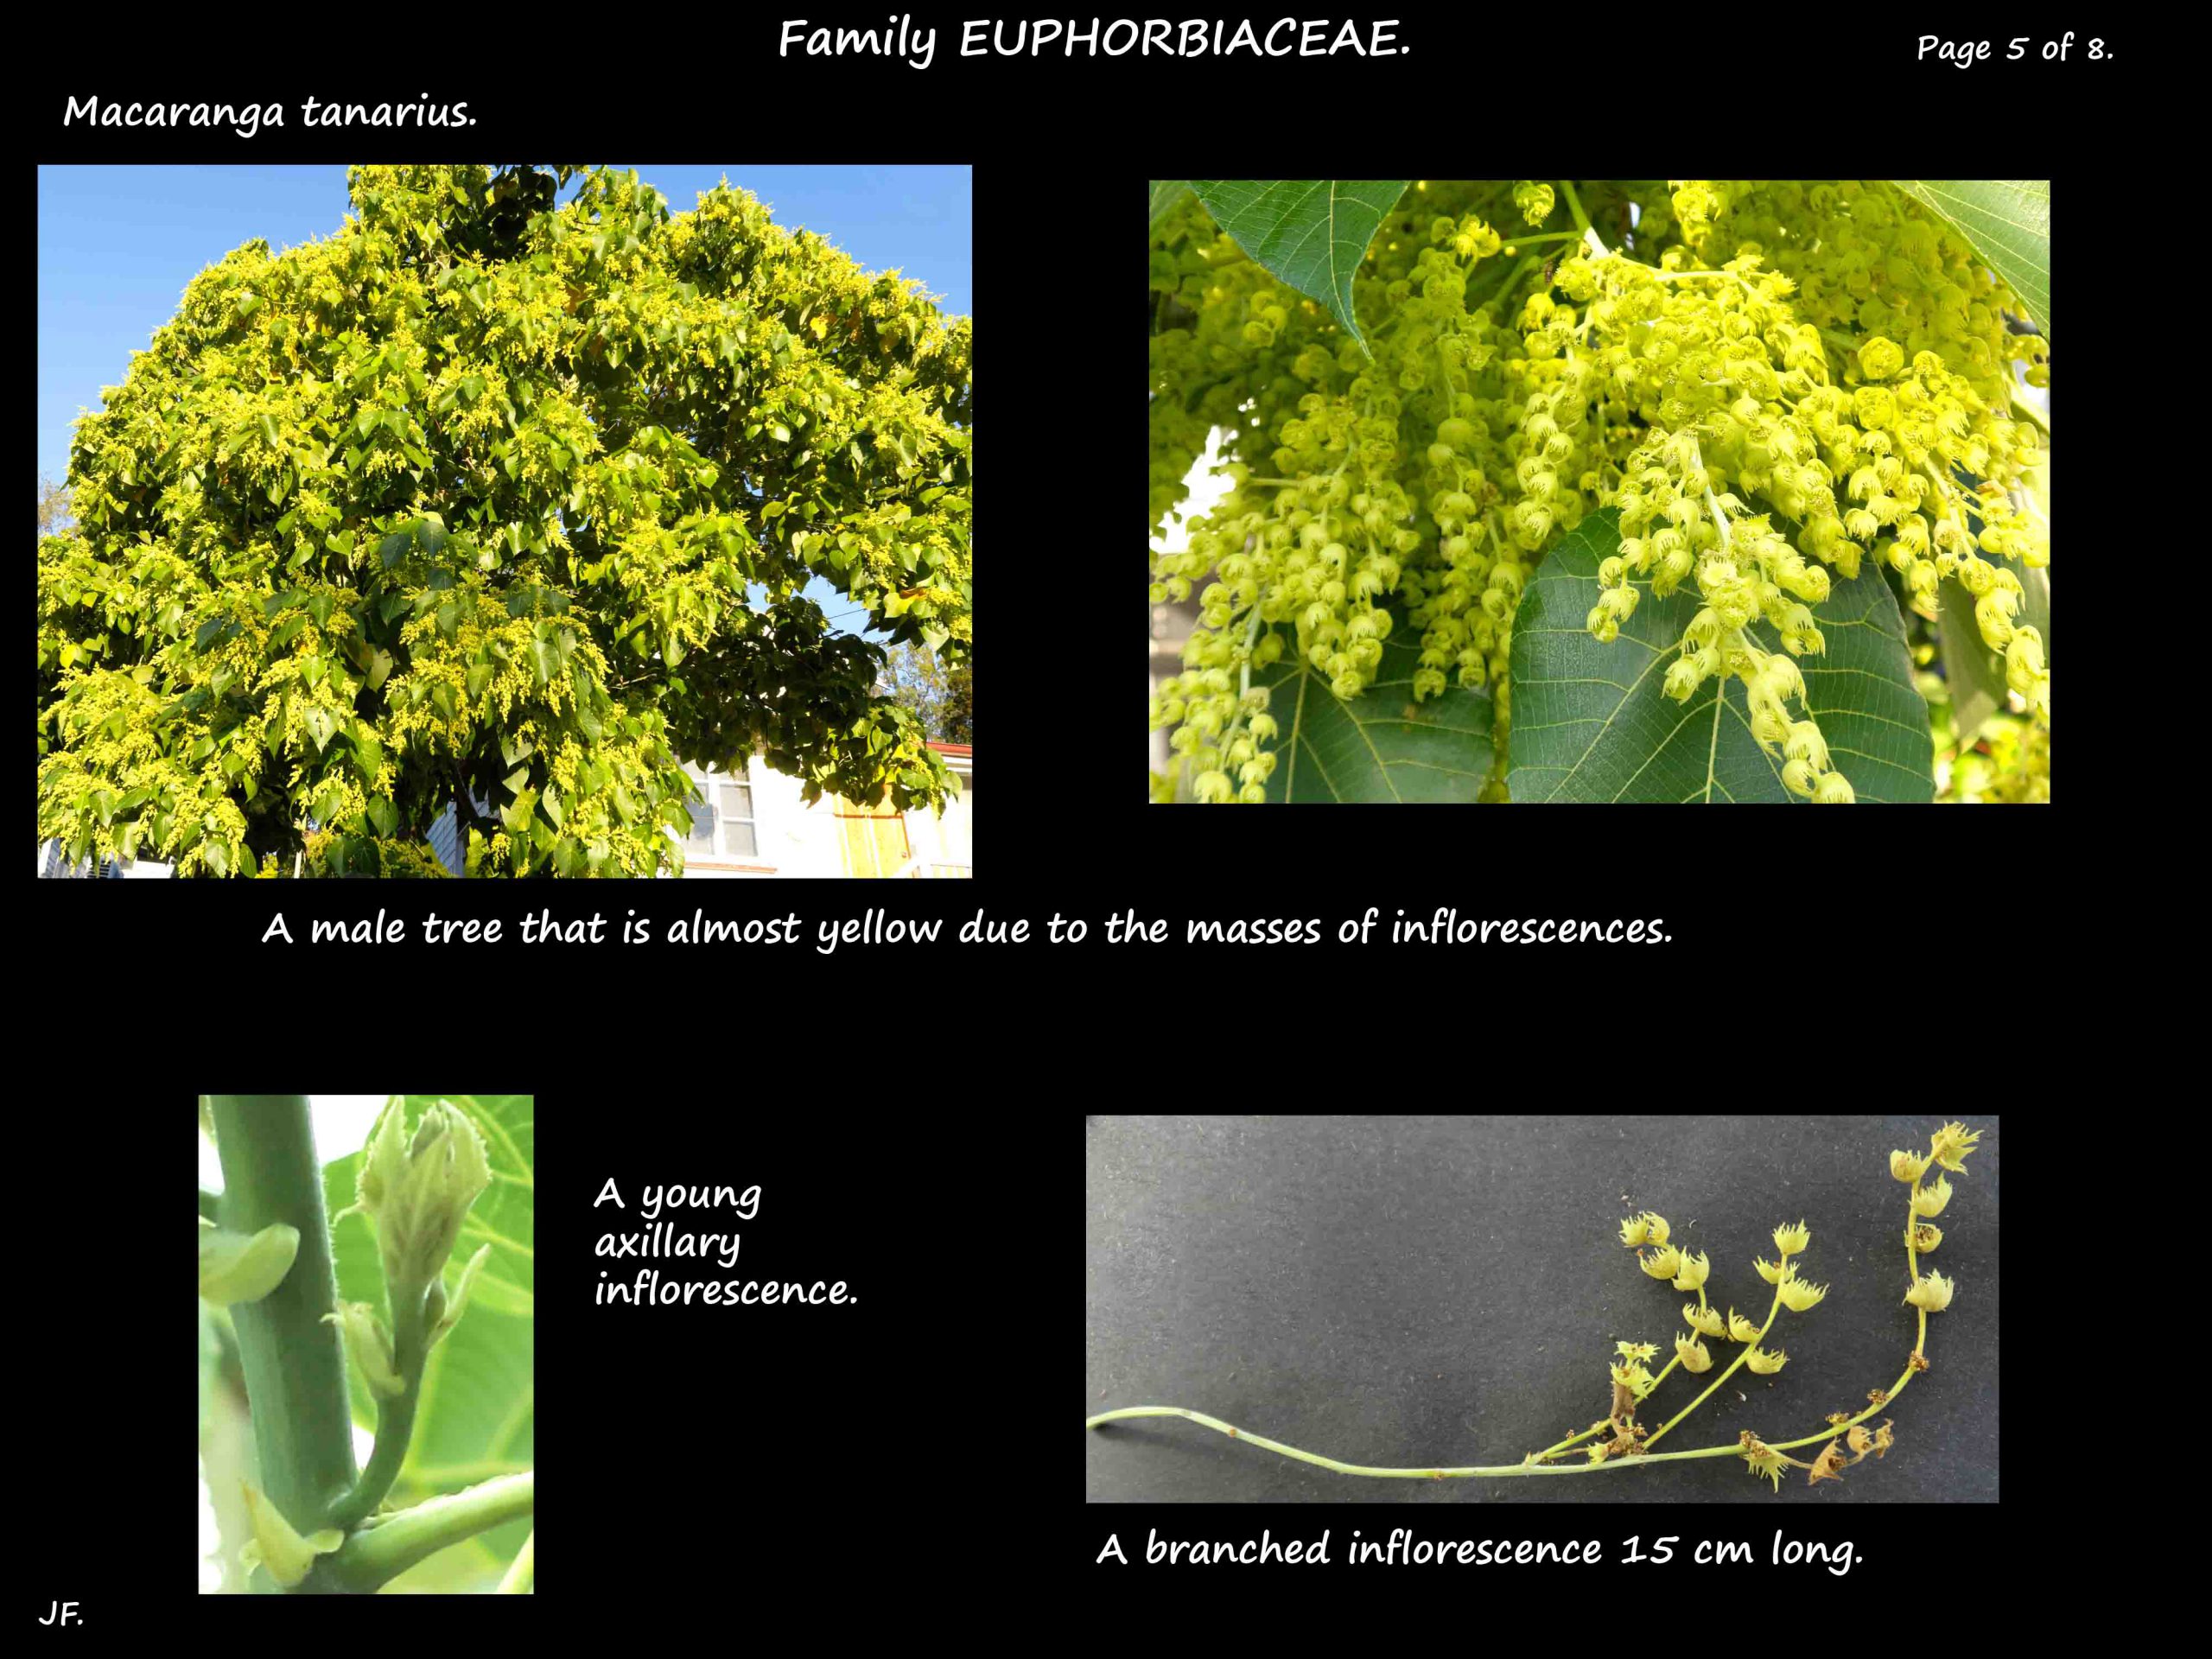 5 Macaranga tanarius inflorescences